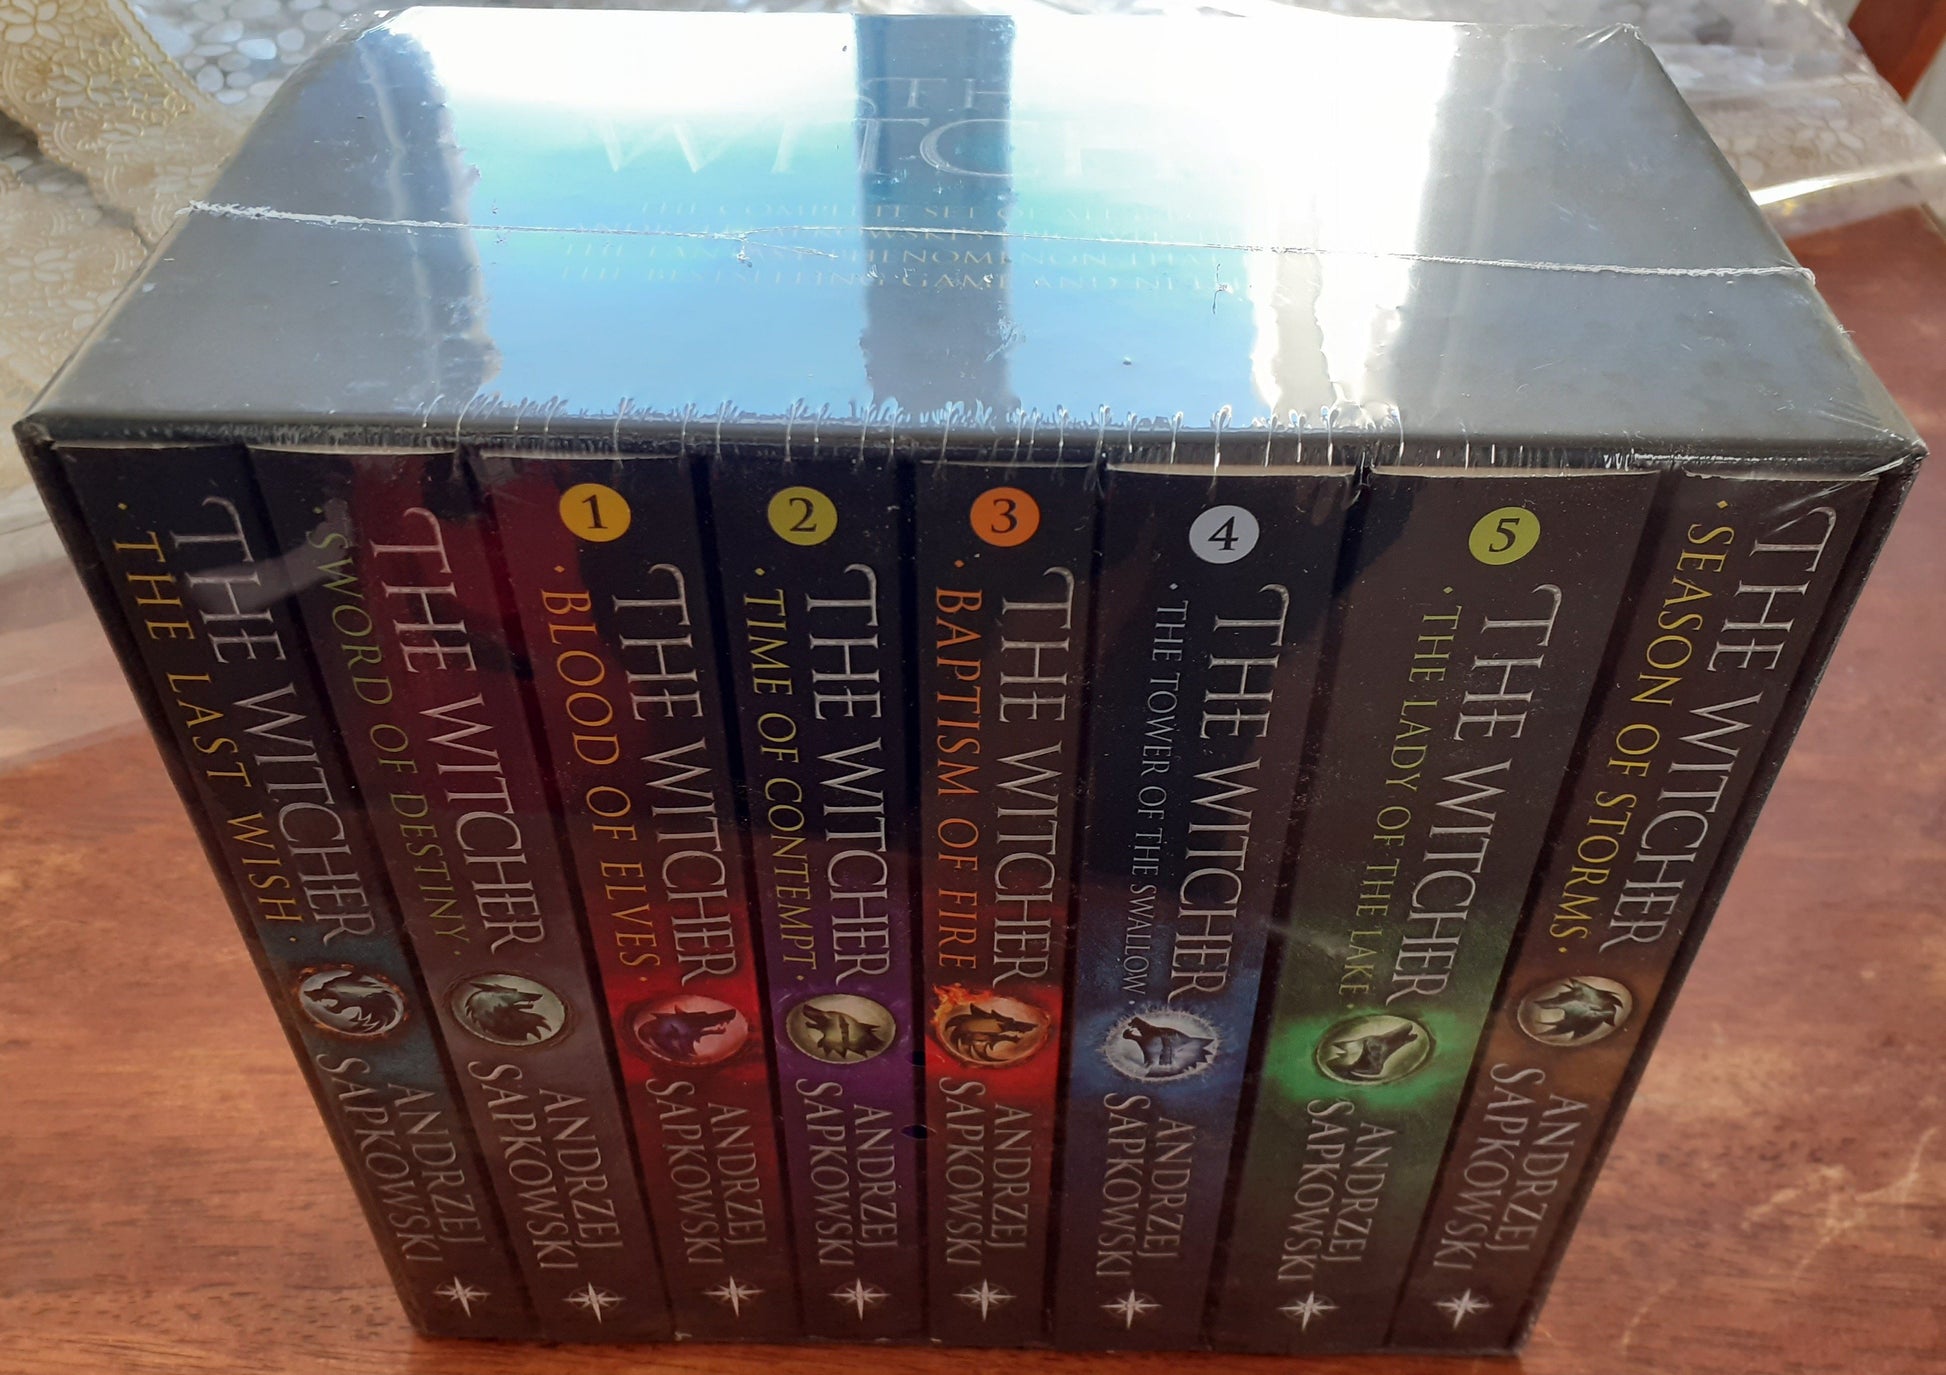 Fantasy Books-Witcher Boxset - Best Books